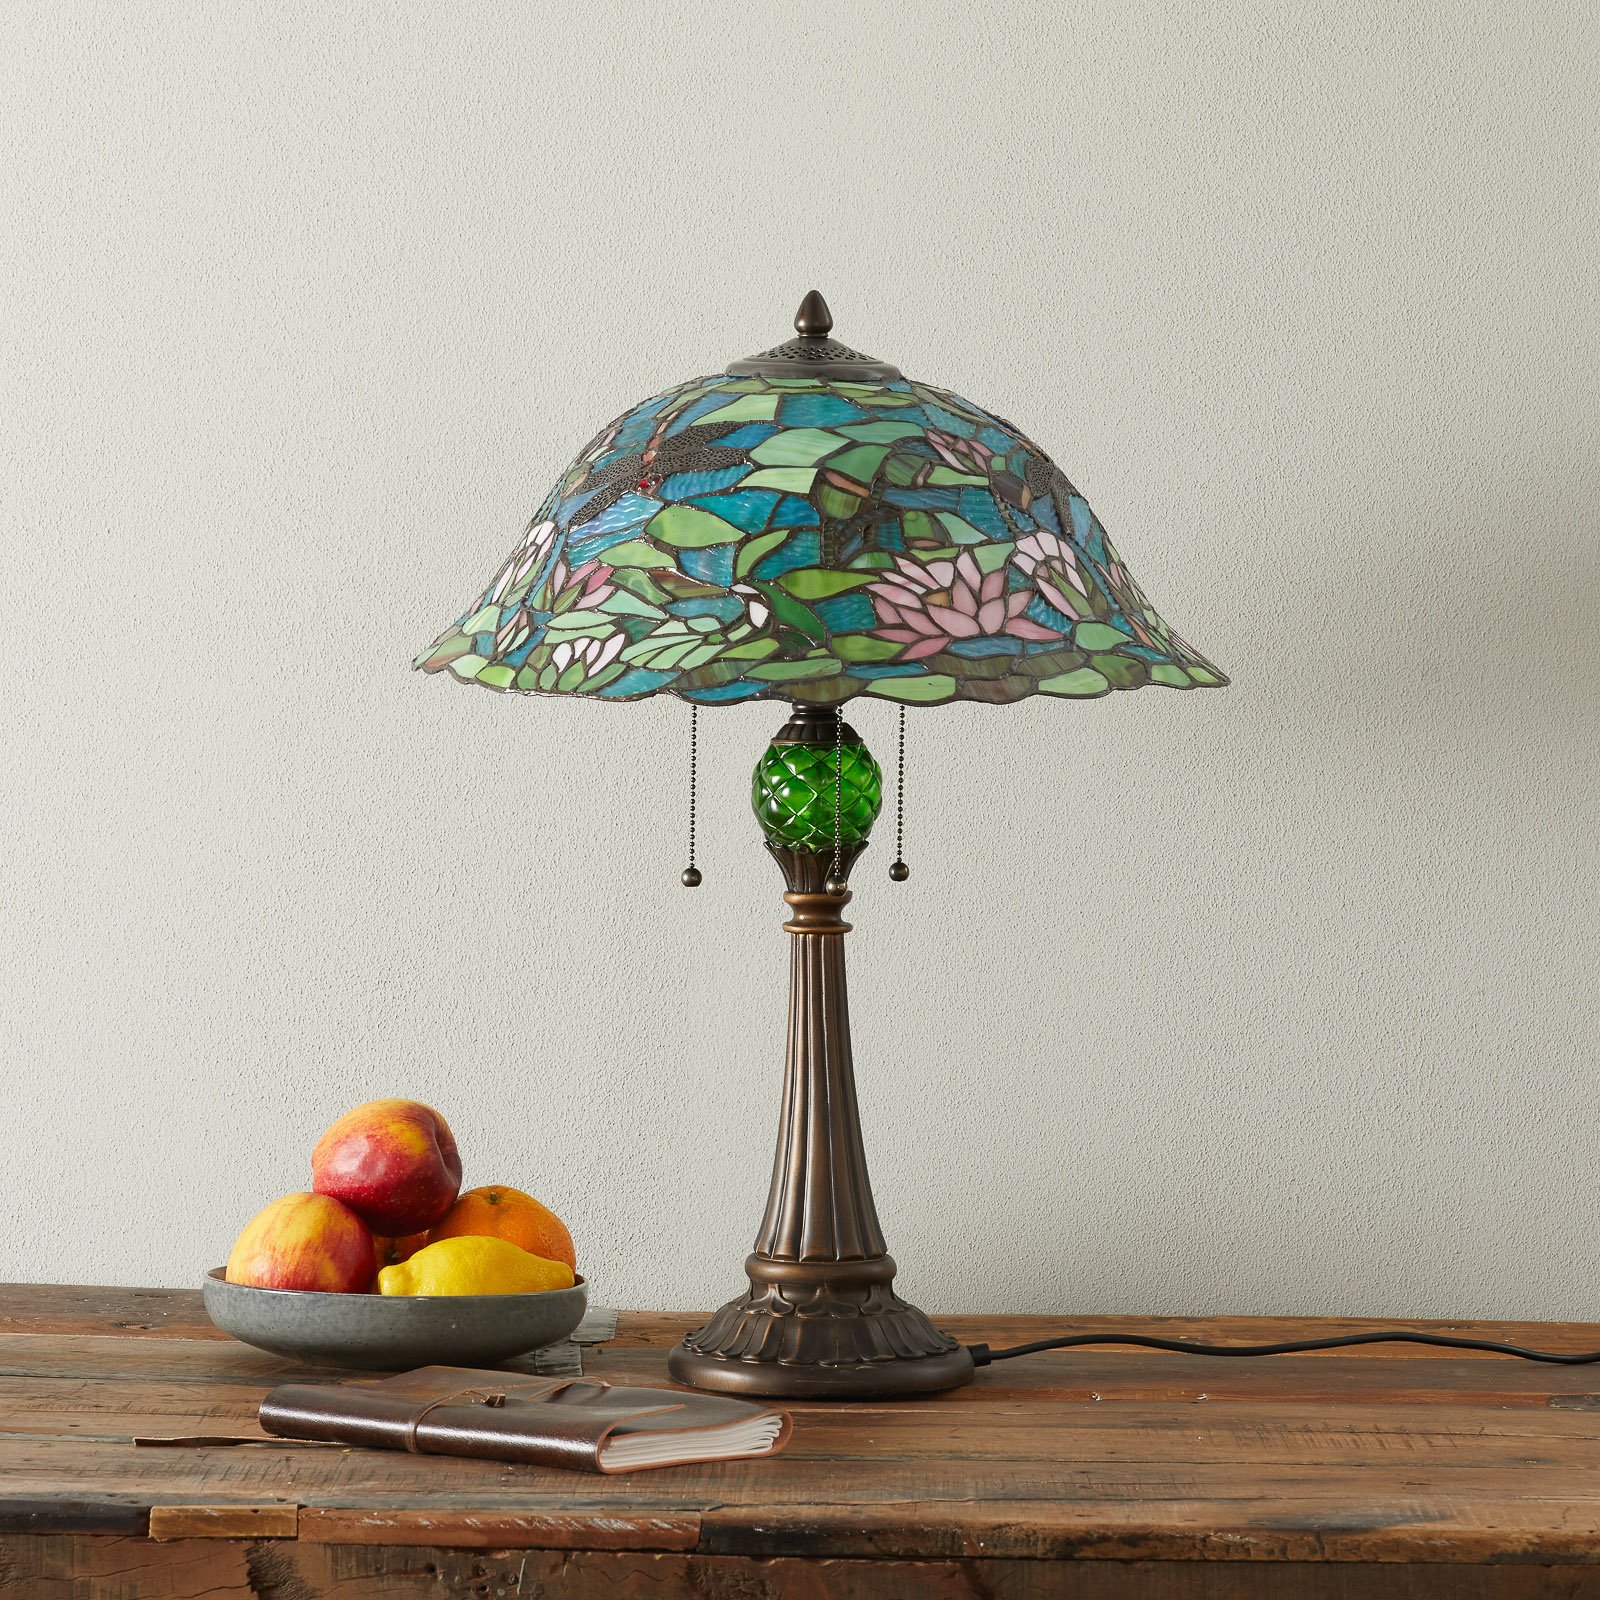 Czarująca lampa stołowa Waterlily w stylu Tiffany